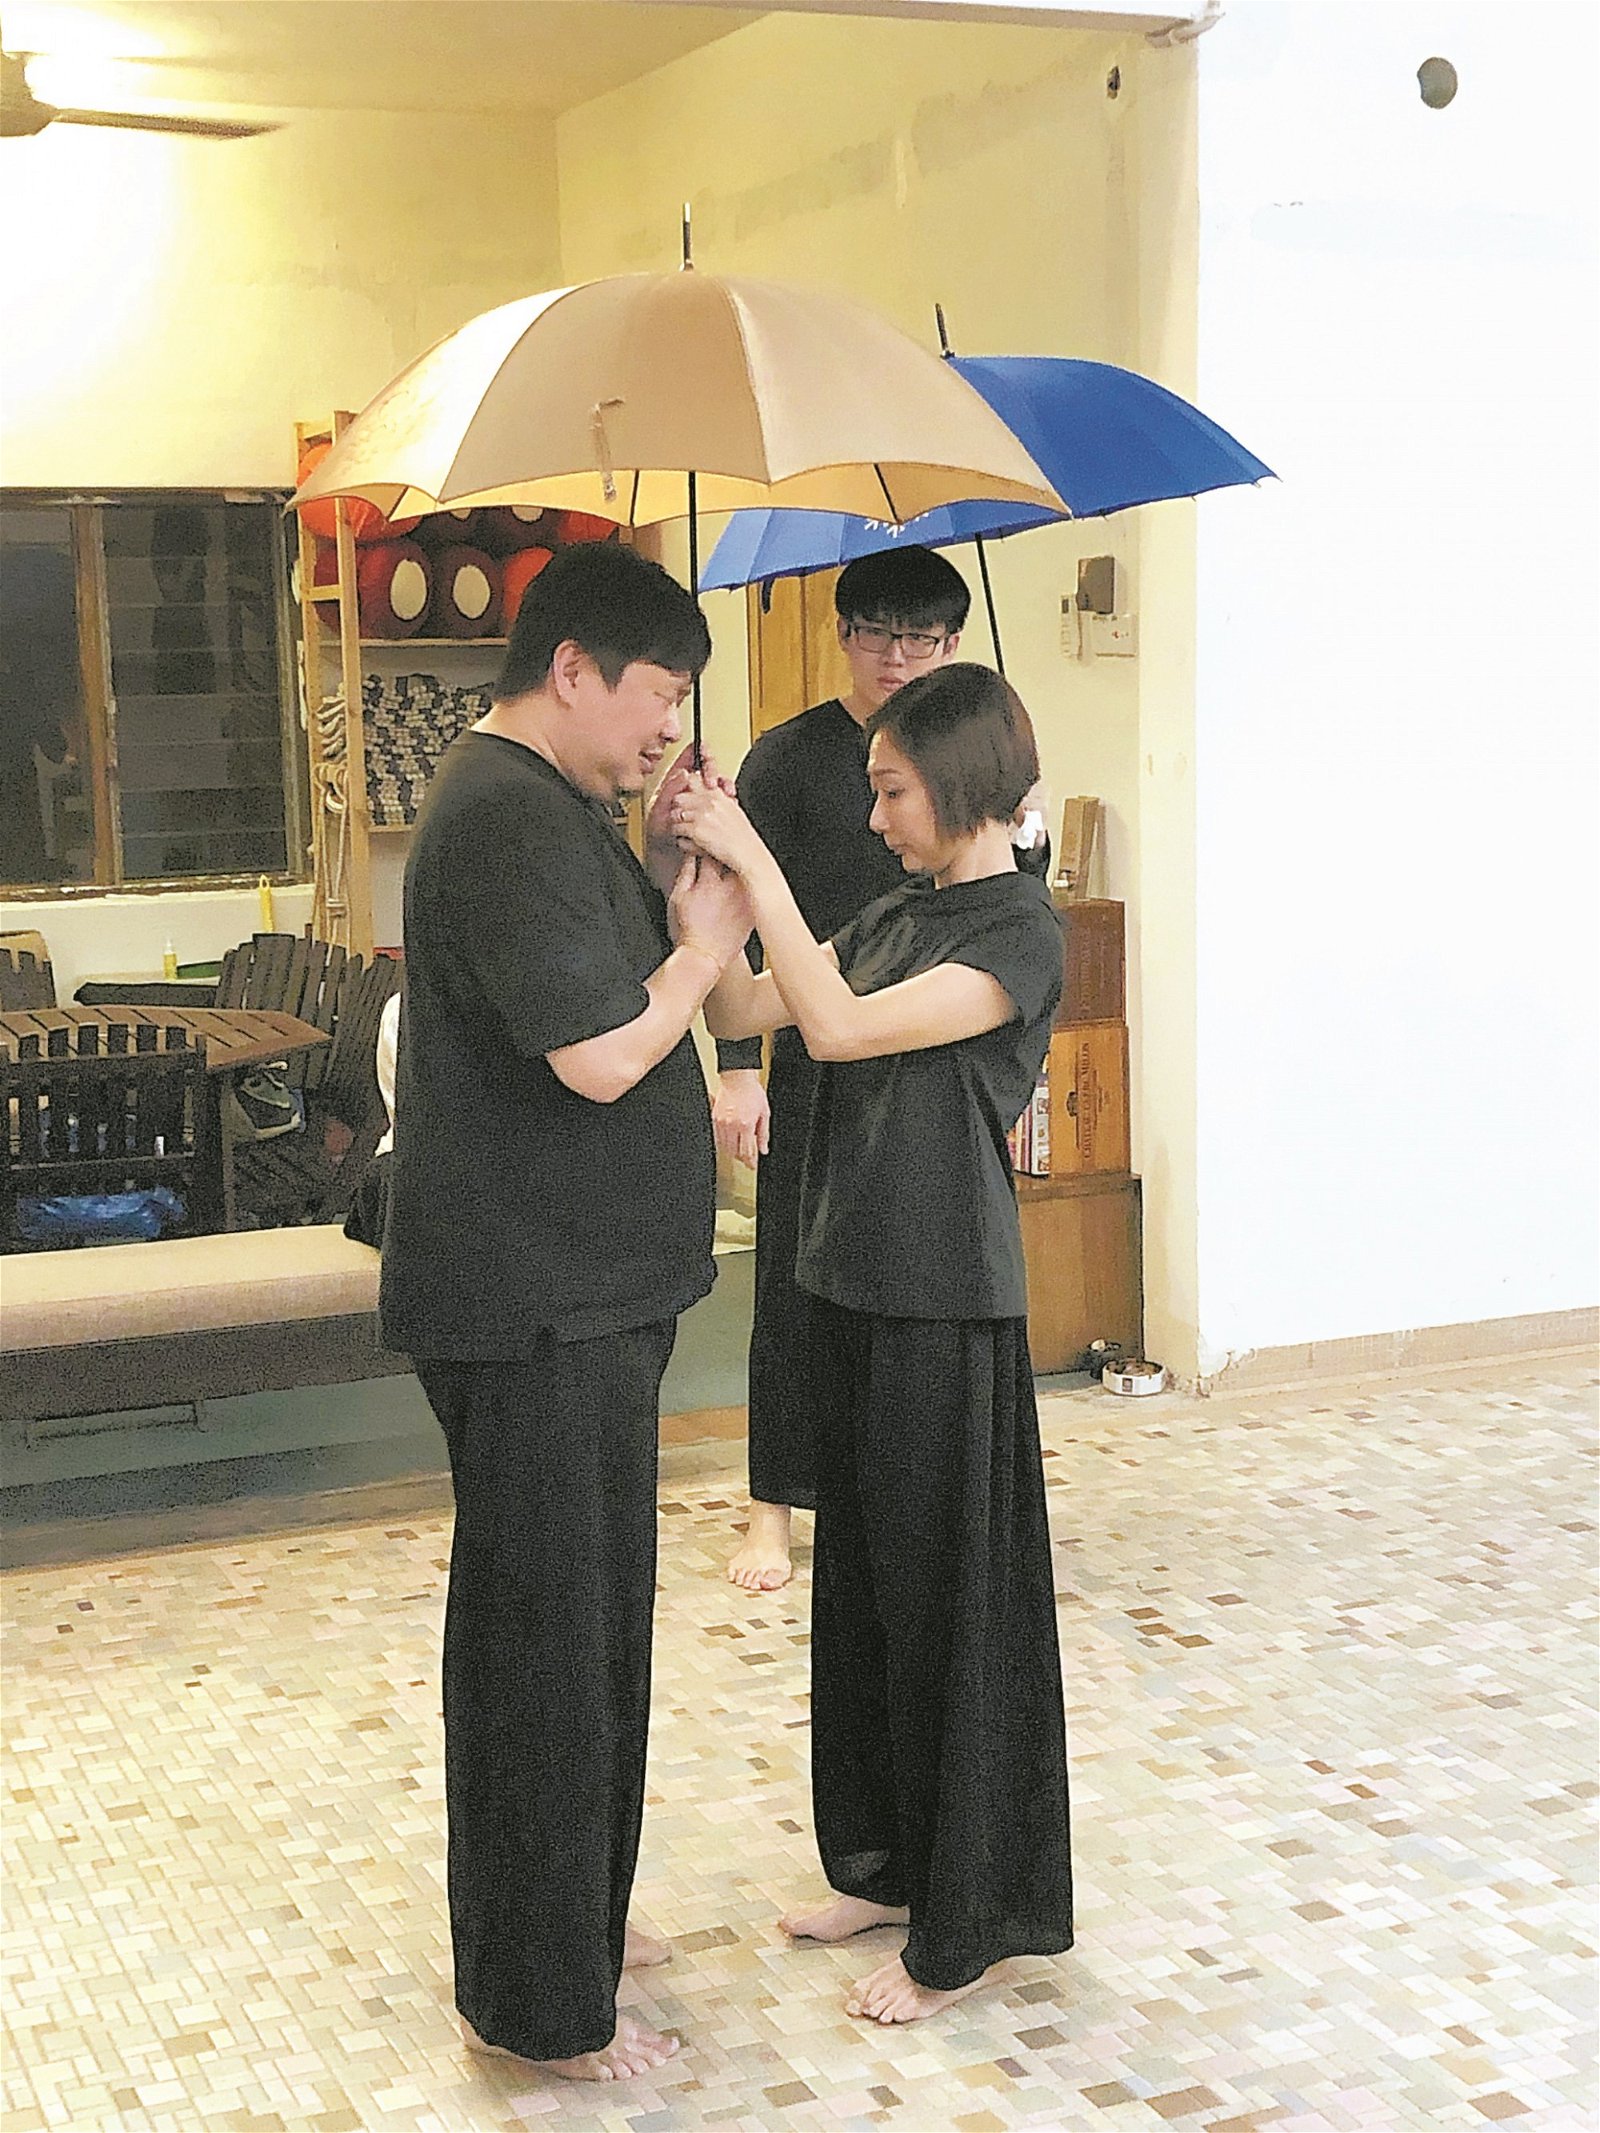 雨伞是常见于叶伟章作品的道具，它可以代表一种守候、一个凄美的意境，而这当中的含义则留给观众去意会。